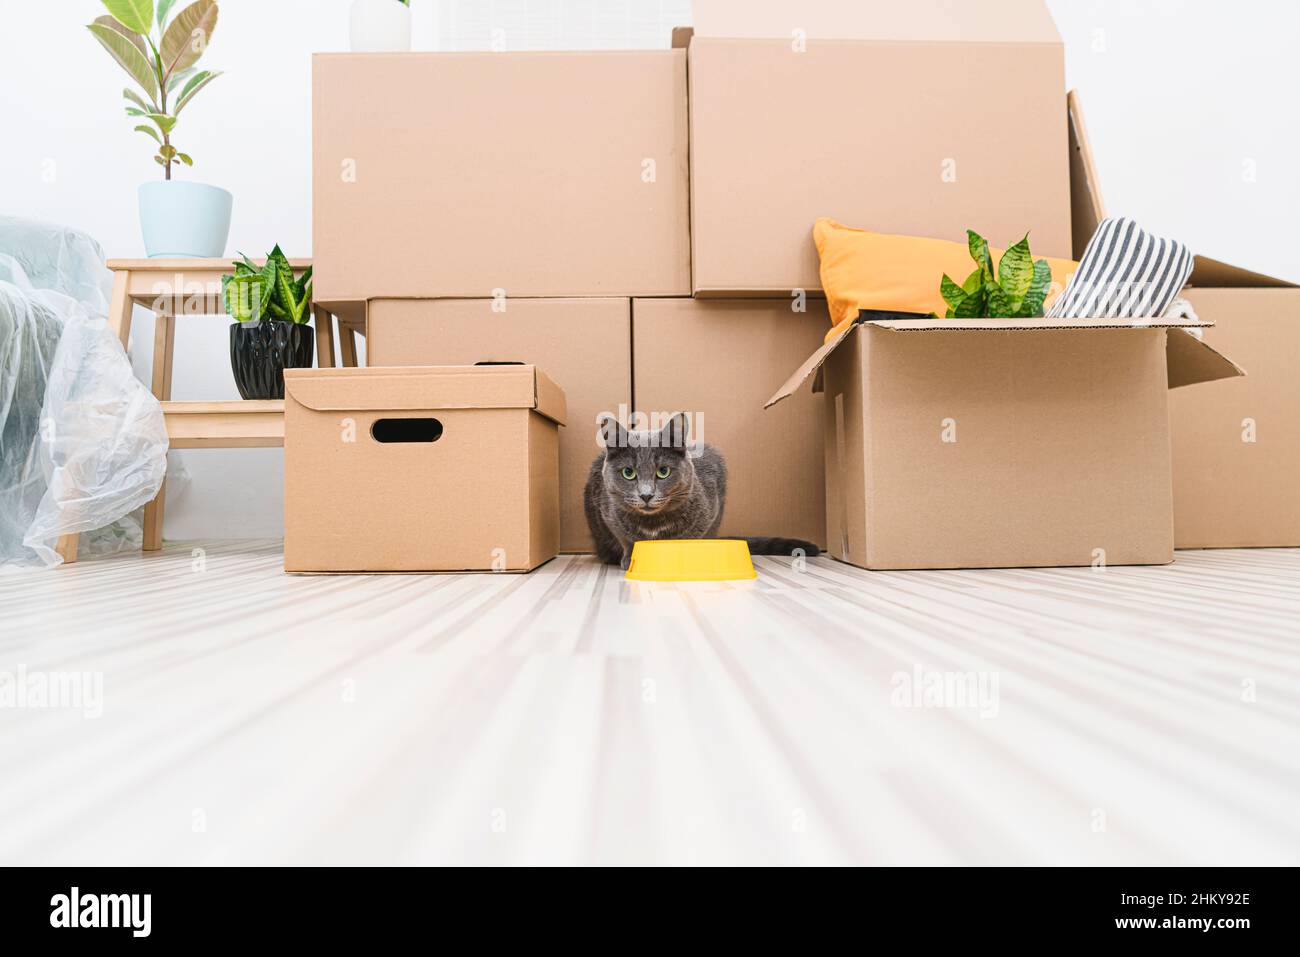 Graue Katze sitzt in einem unmöblierten Raum zwischen den Boxen, während sie sich bewegt. Stockfoto